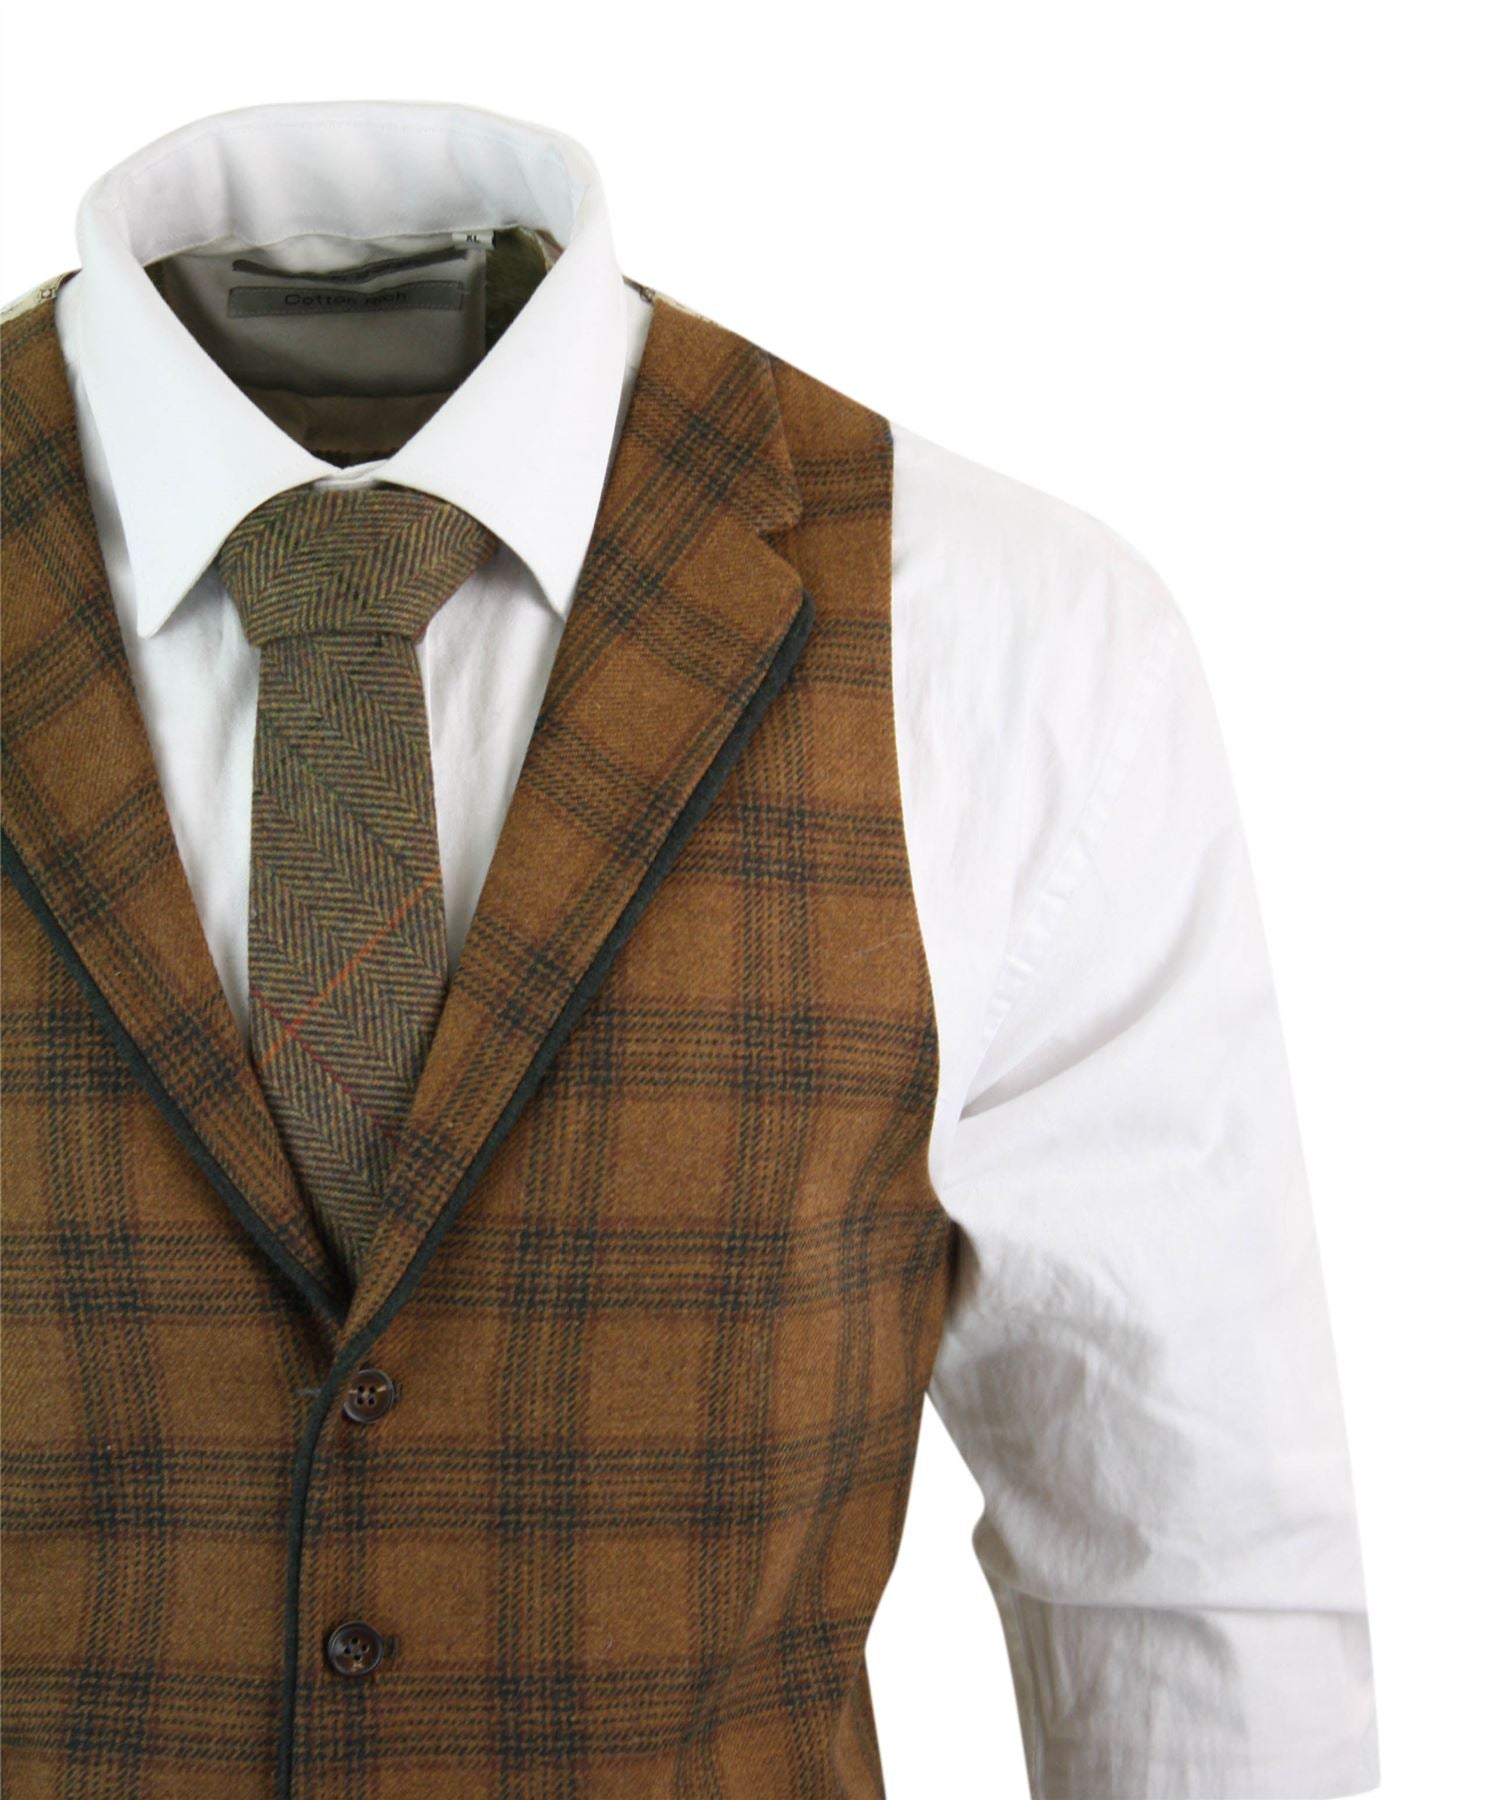 Mens Waistcoat Wool Check Herringbone Tweed Brown Black Classic Vintage Fit